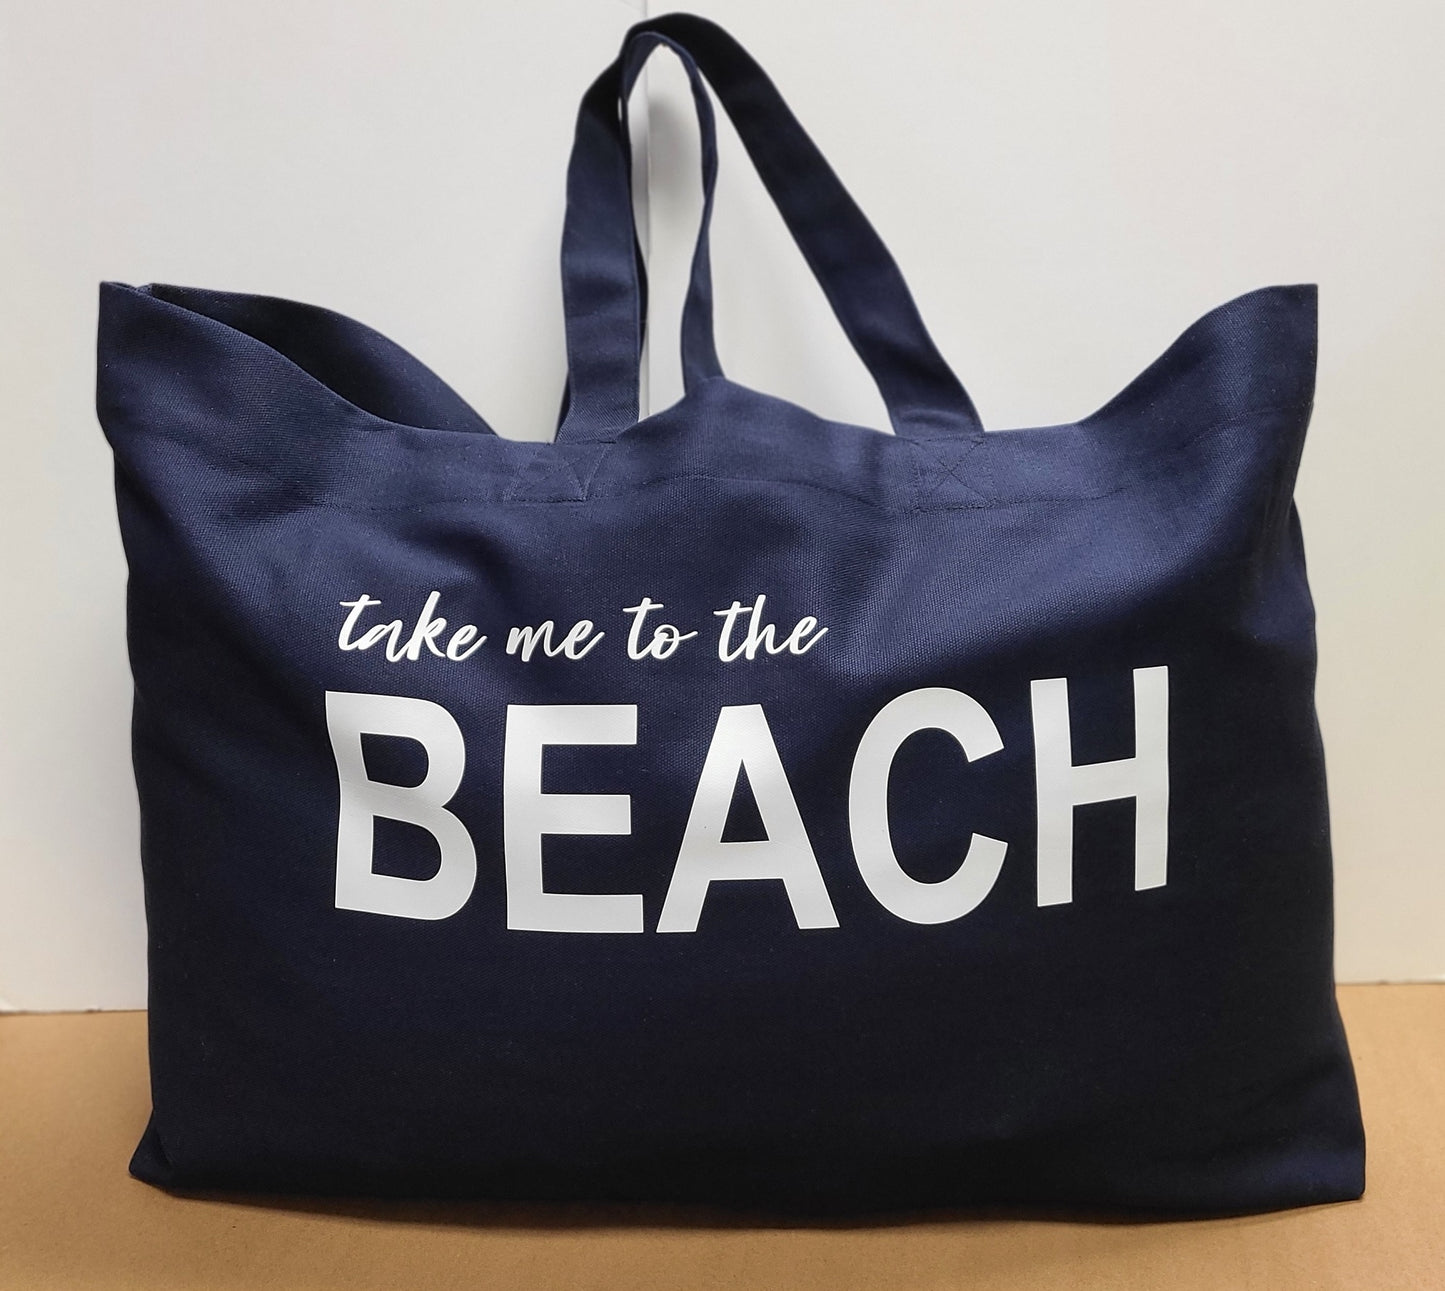 Take me to the BEACH Tote Bag Navy